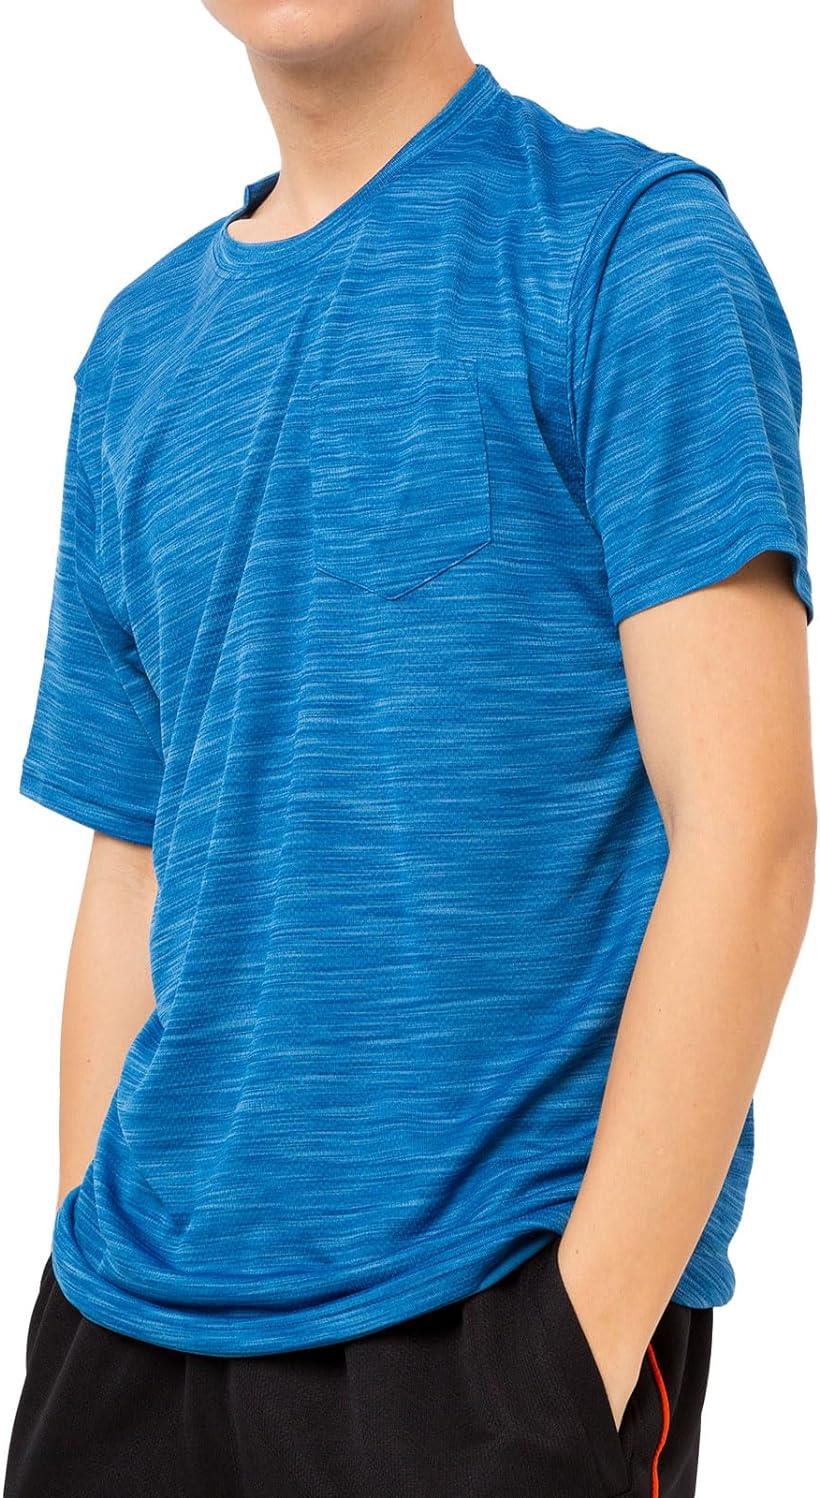 [Y's factory] Tシャツ トップス 半袖 メンズ スポーツウェア フィットネスウェア ドライウェア リフレクション DRY ドライ 吸汗速乾 接触冷感 ストレッチ [ ブルーA LLサイズ ]